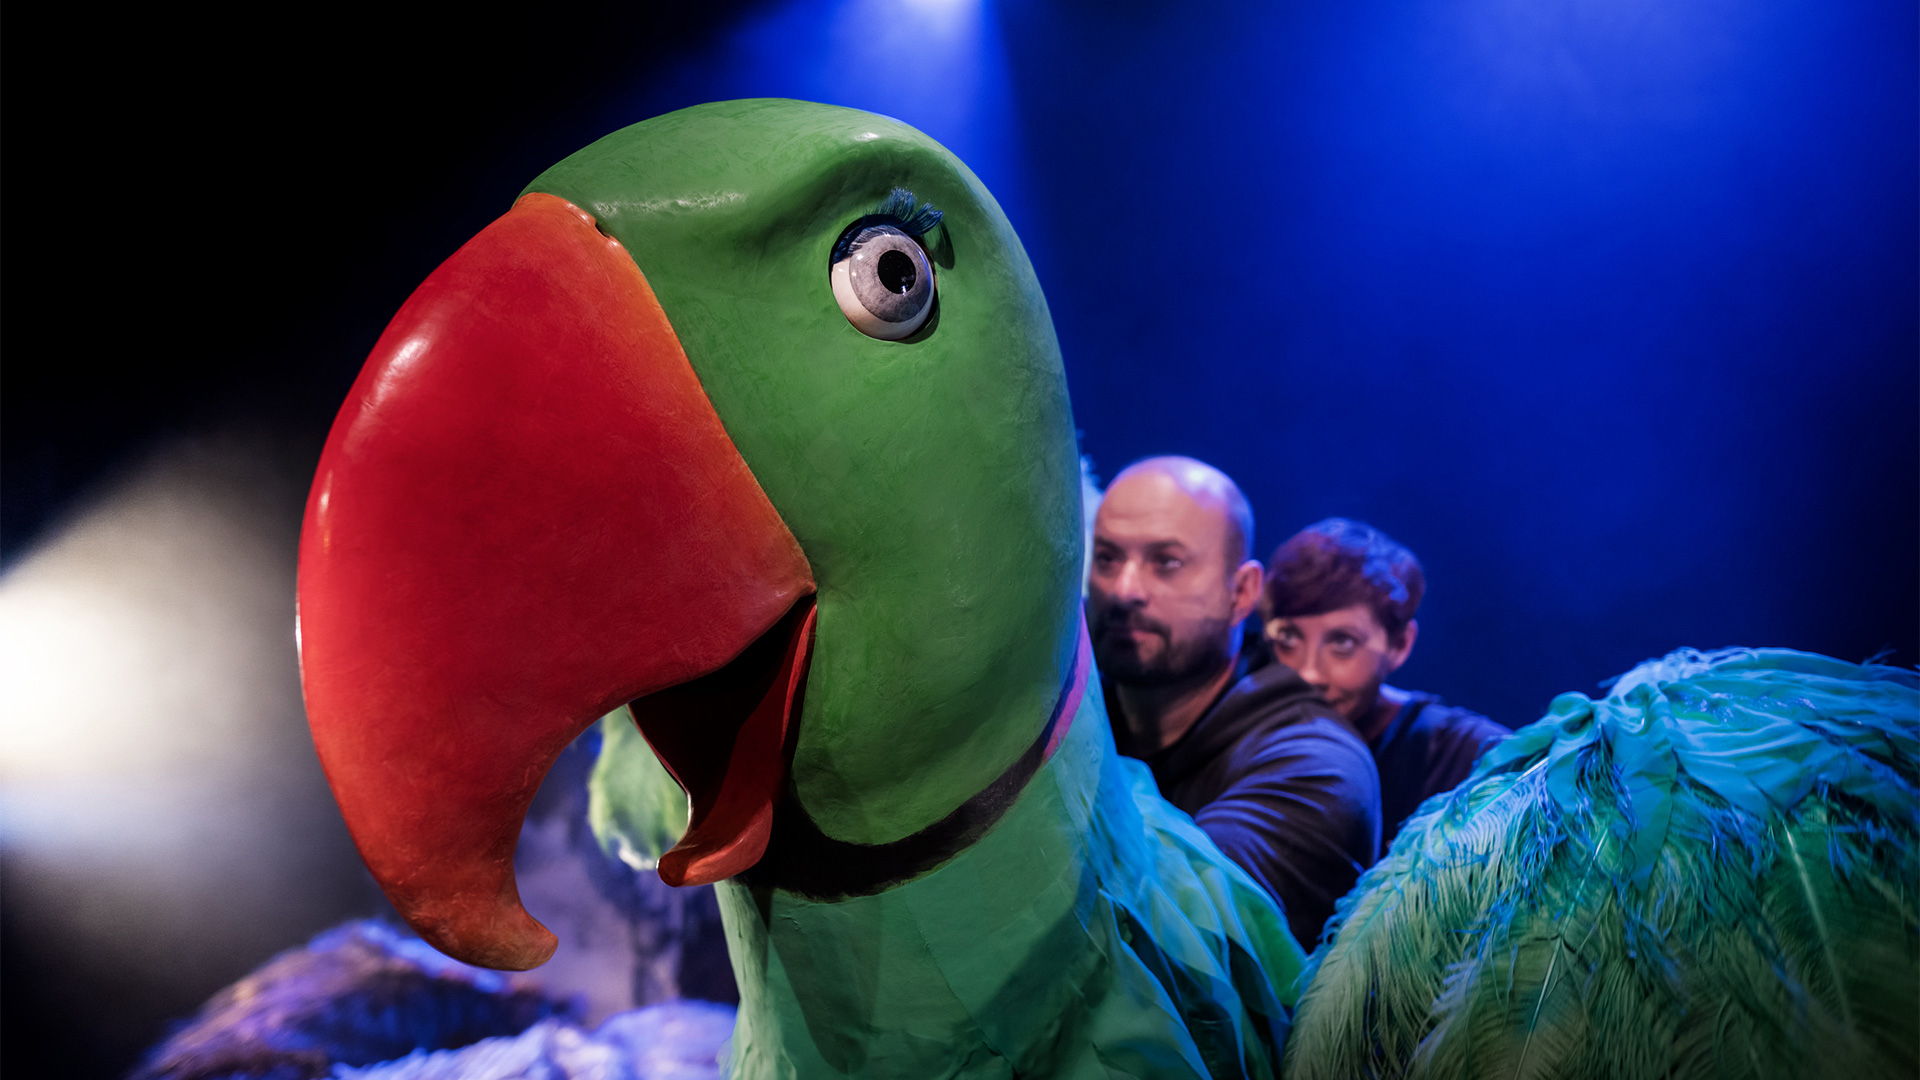 en marionettdocka i form av en stor grön fågel med orange näbb samt två personer bakom som styr dockan.